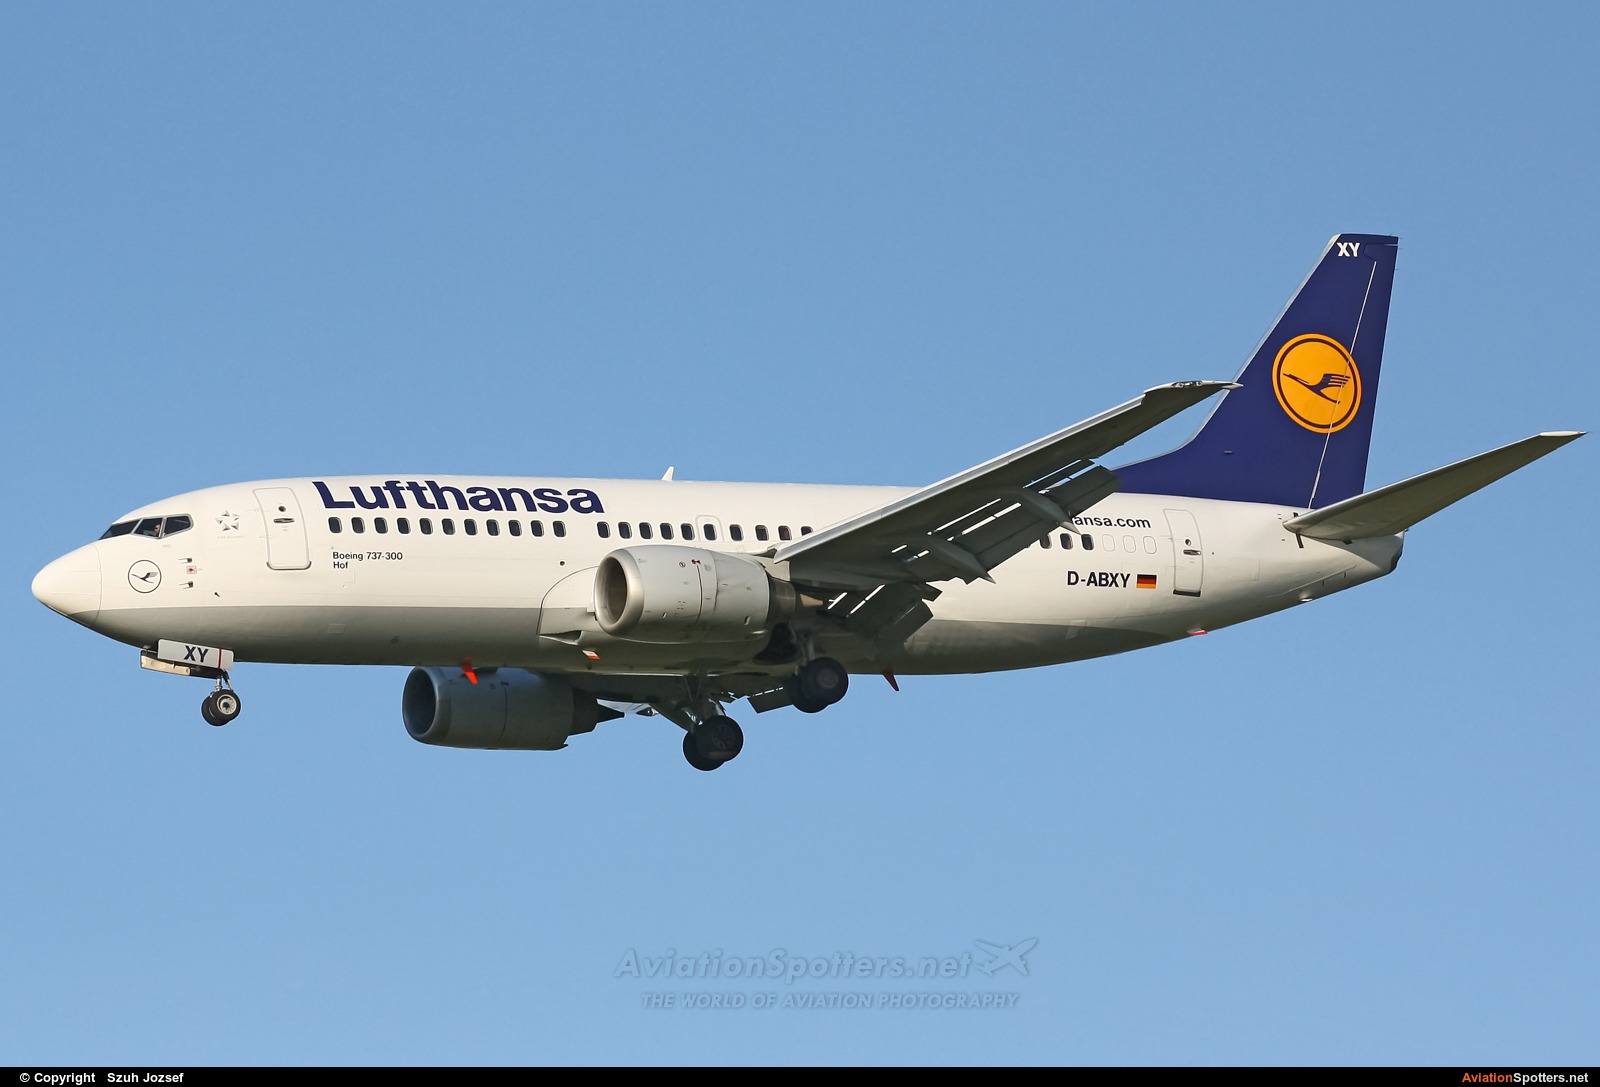 Lufthansa  -  737-300  (D-ABXY) By Szuh Jozsef (szuh jozsef)